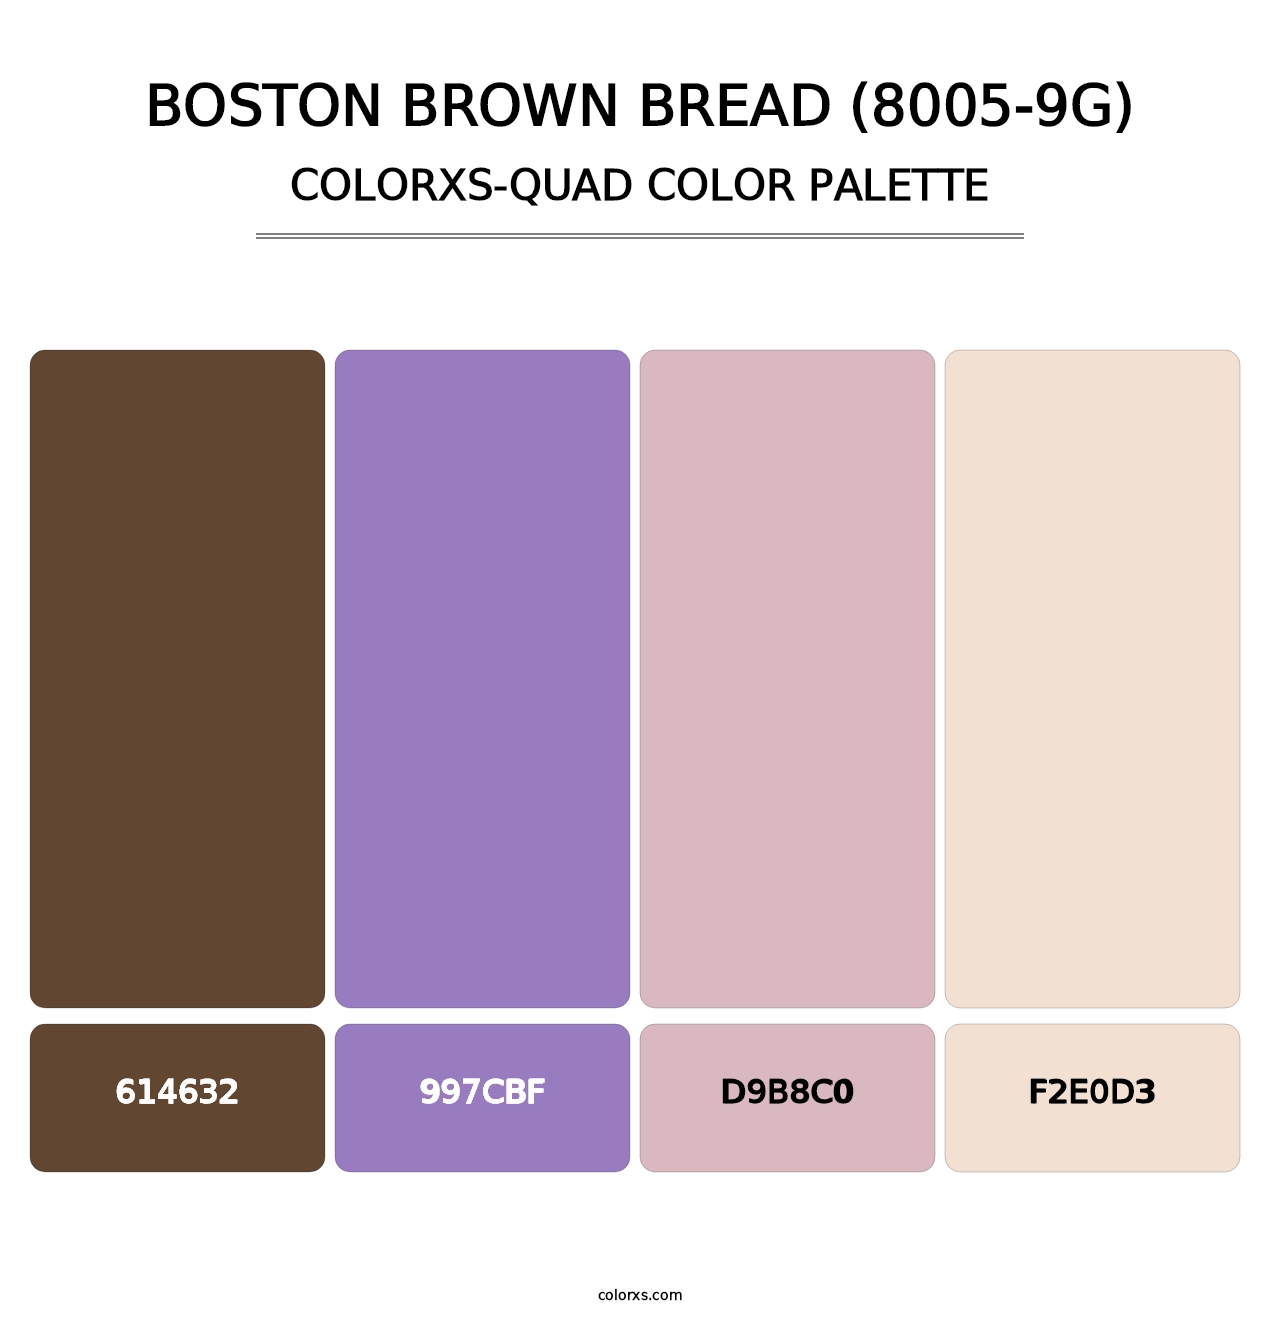 Boston Brown Bread (8005-9G) - Colorxs Quad Palette